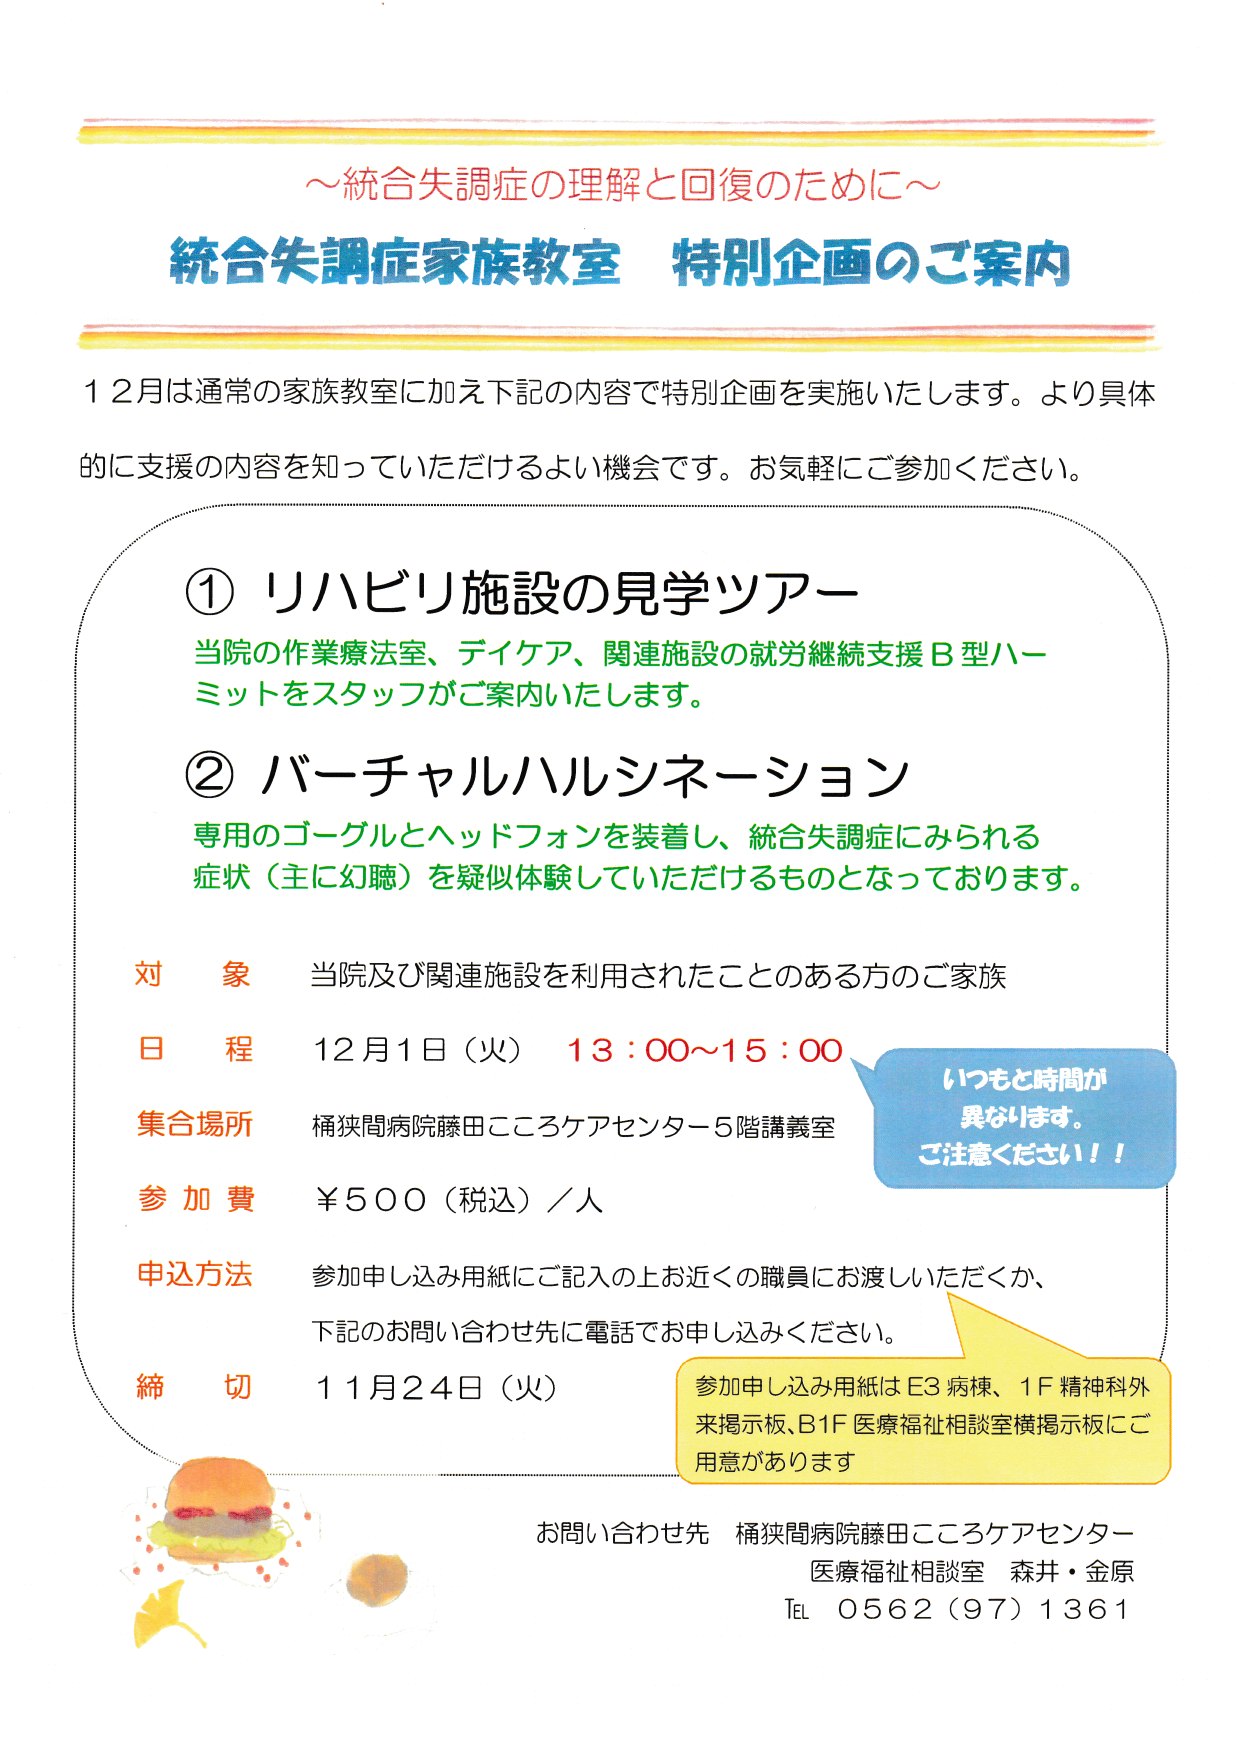 http://www.seishinkai-kokoro.jp/news/2015-12%E4%BD%93%E9%A8%93%E3%83%84%E3%82%A2%E3%83%BC.jpg